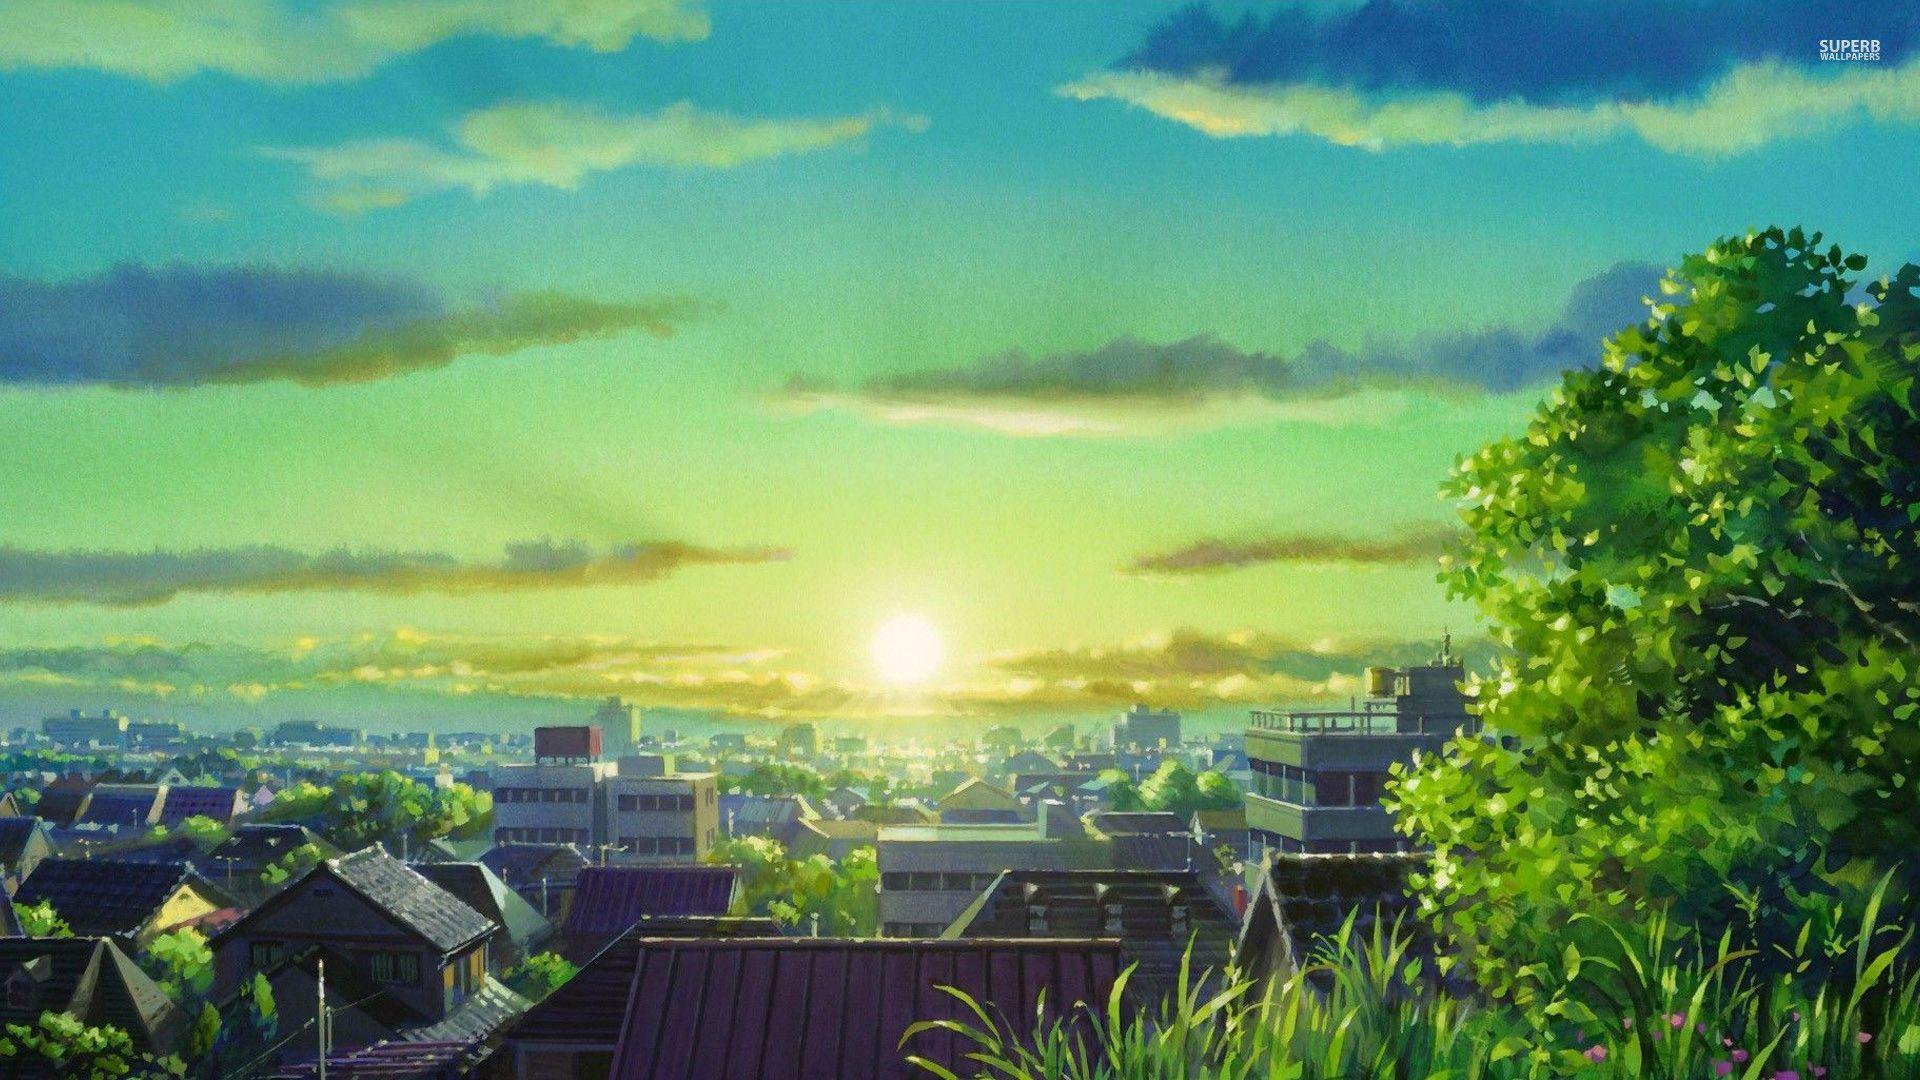 Hình nền anime bình minh: Đón một ngày mới rực rỡ với bức tranh anime bình minh đẹp mắt này! Mặt trời mọc, ánh sáng rọi xuống đất trở thành sự thức tỉnh đầy cảm hứng của những nhân vật anime đang say sưa trên màn hình của bạn. Cùng cảm nhận và khám phá vẻ đẹp tuyệt vời này!